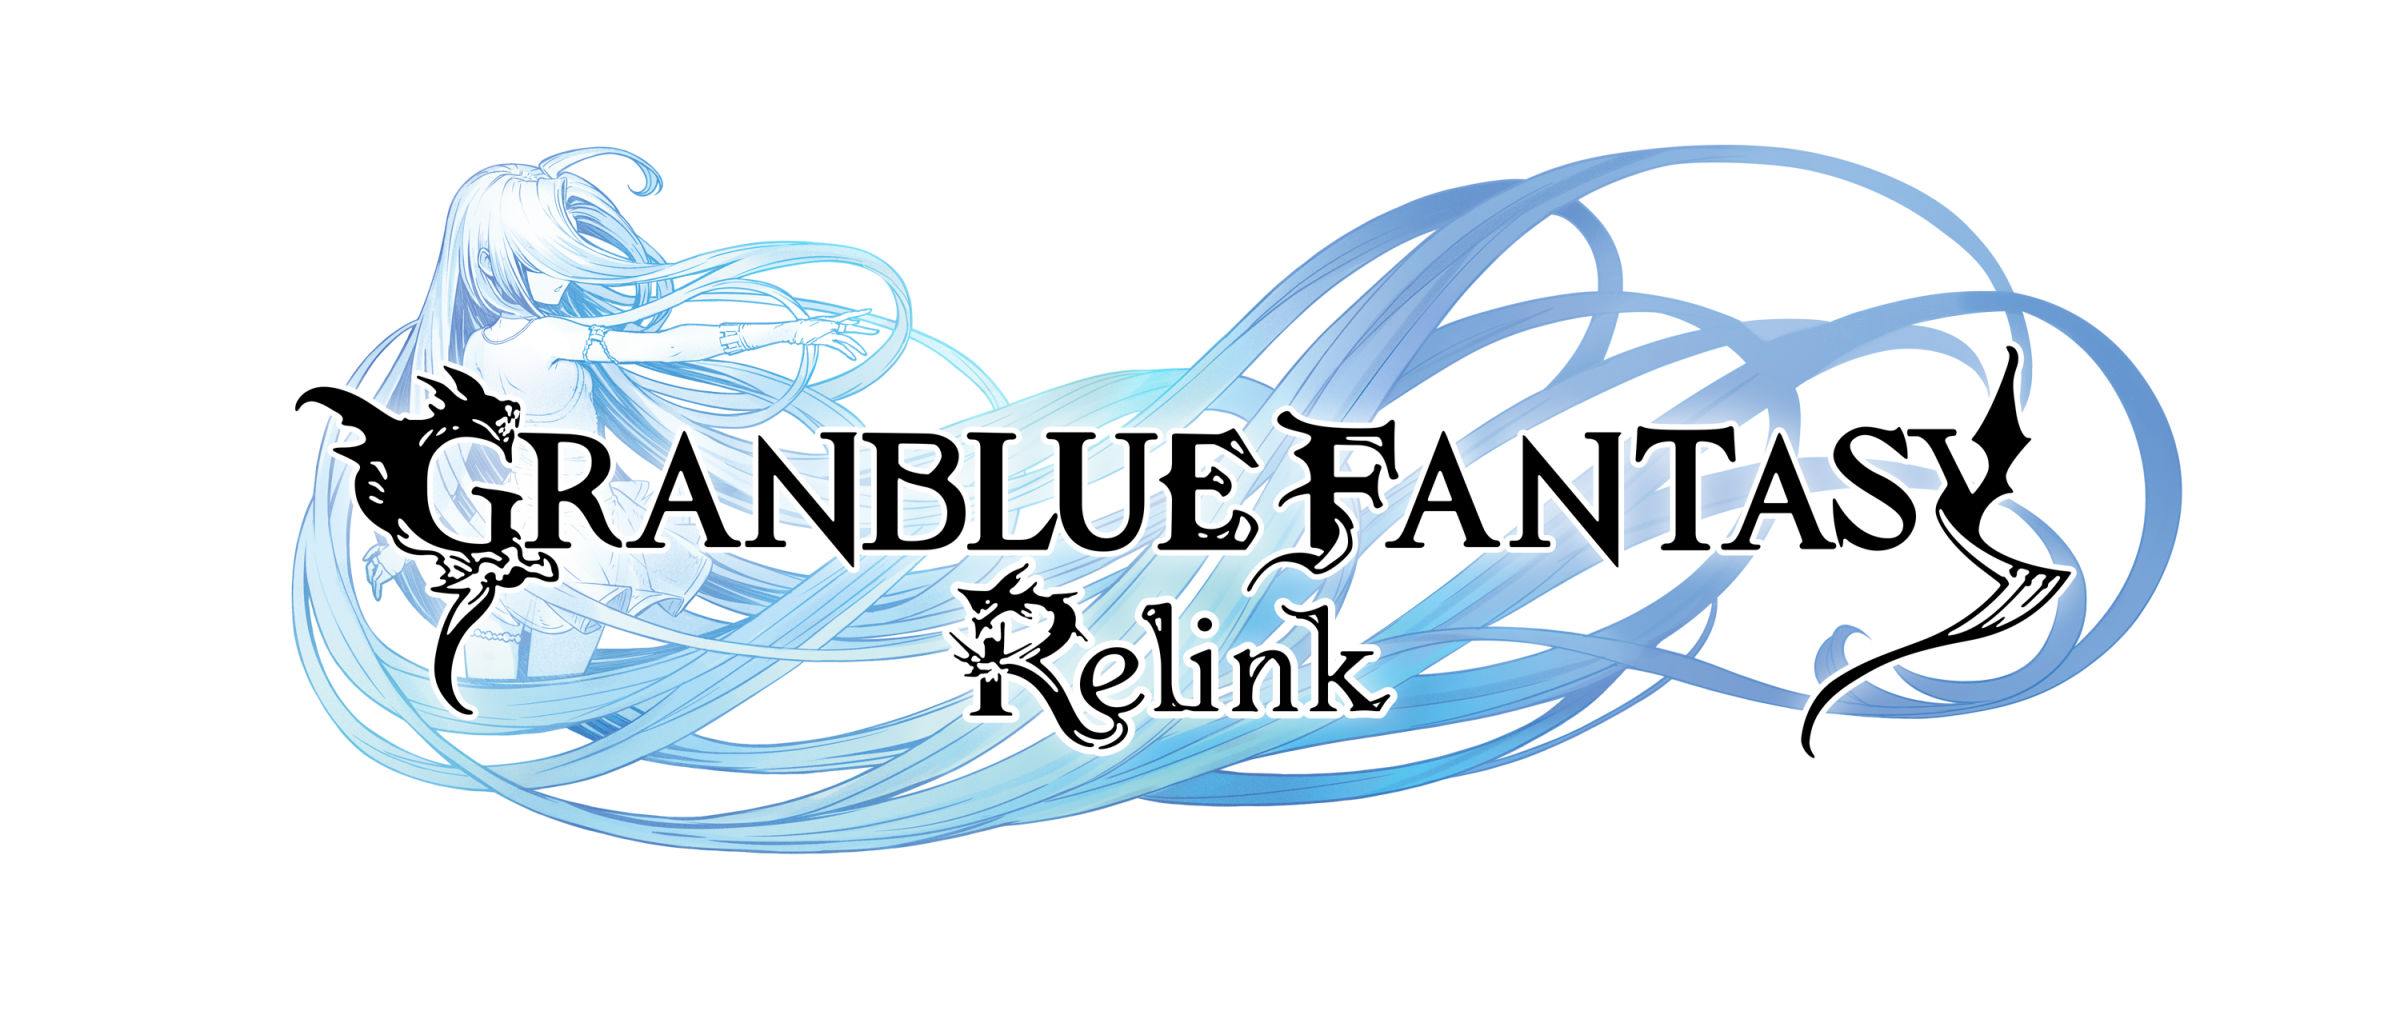 《Granblue Fantasy: Relink》 冒险舞台、星晶兽、初期角色介绍-第0张